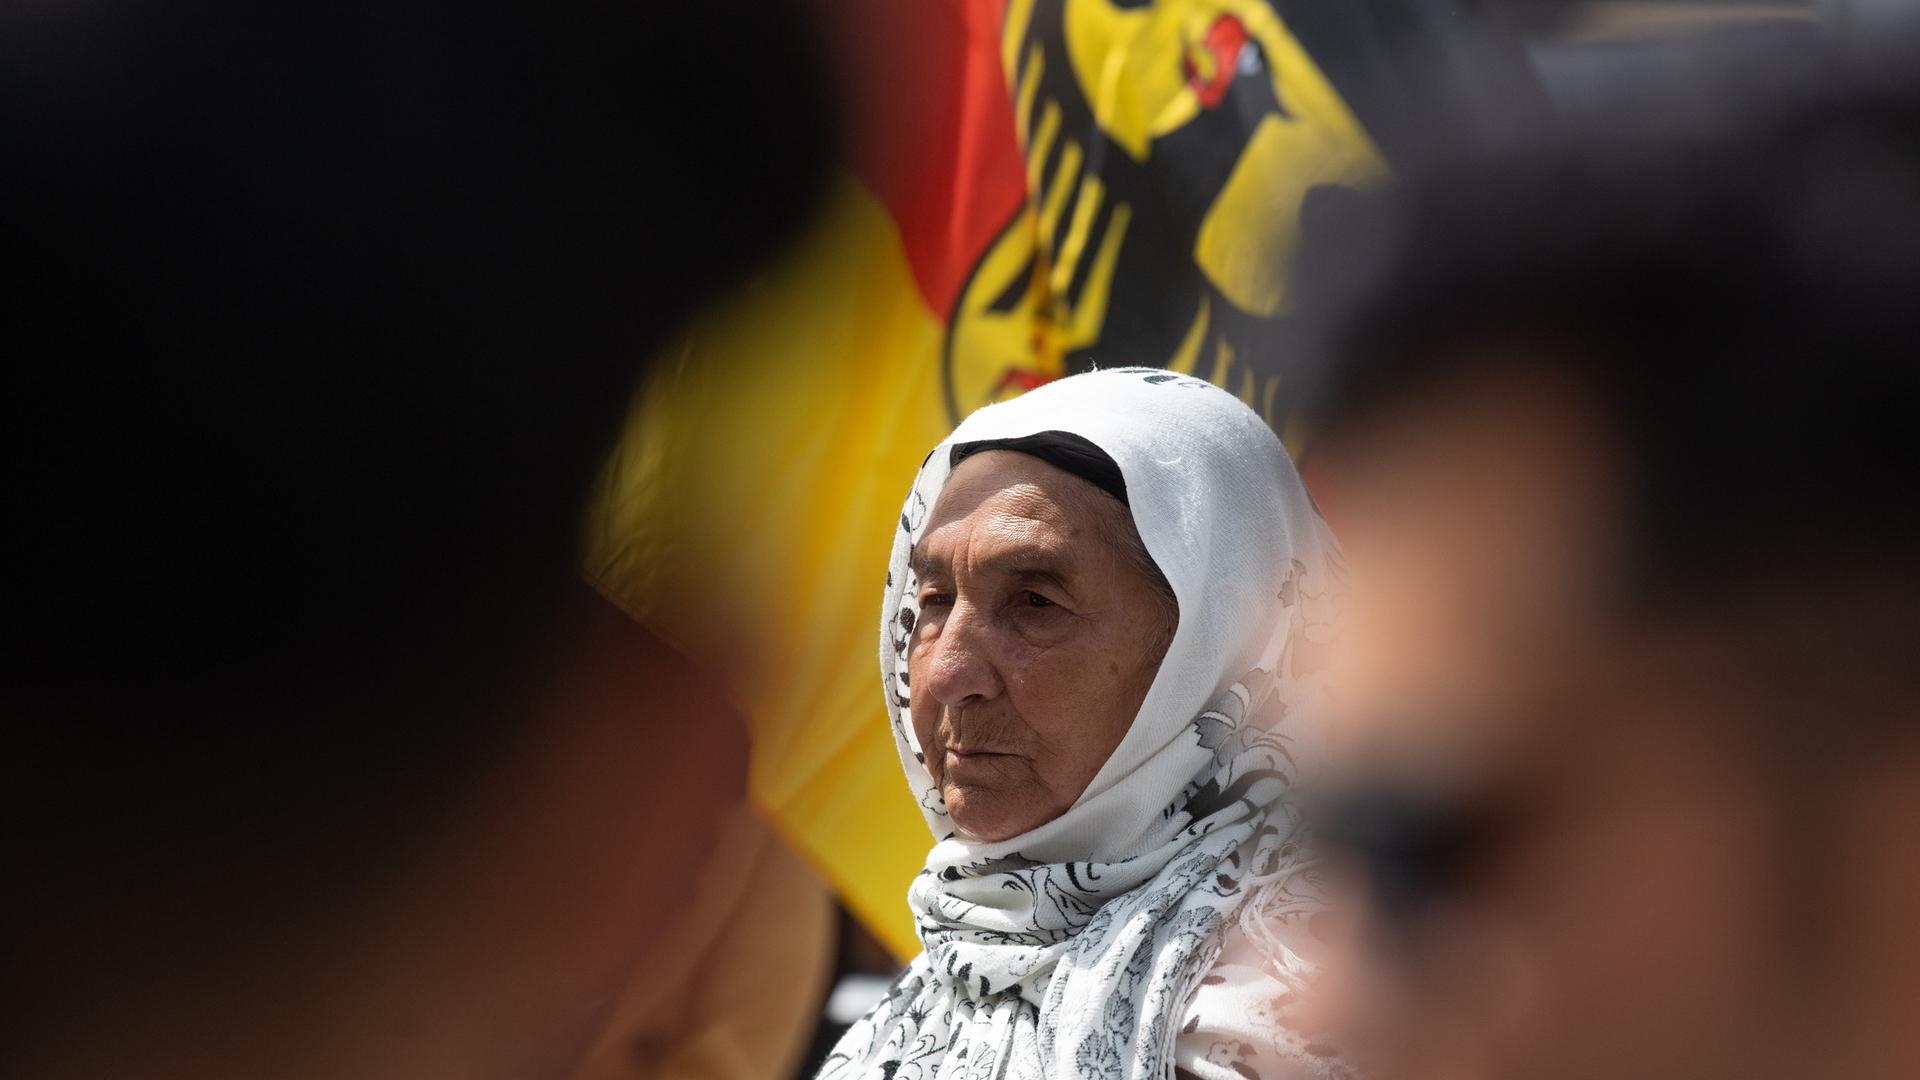 Eine Afghanin mit Kopfbedeckung ist zu sehen, hinter ihr ist eine Deutschlandfahne.